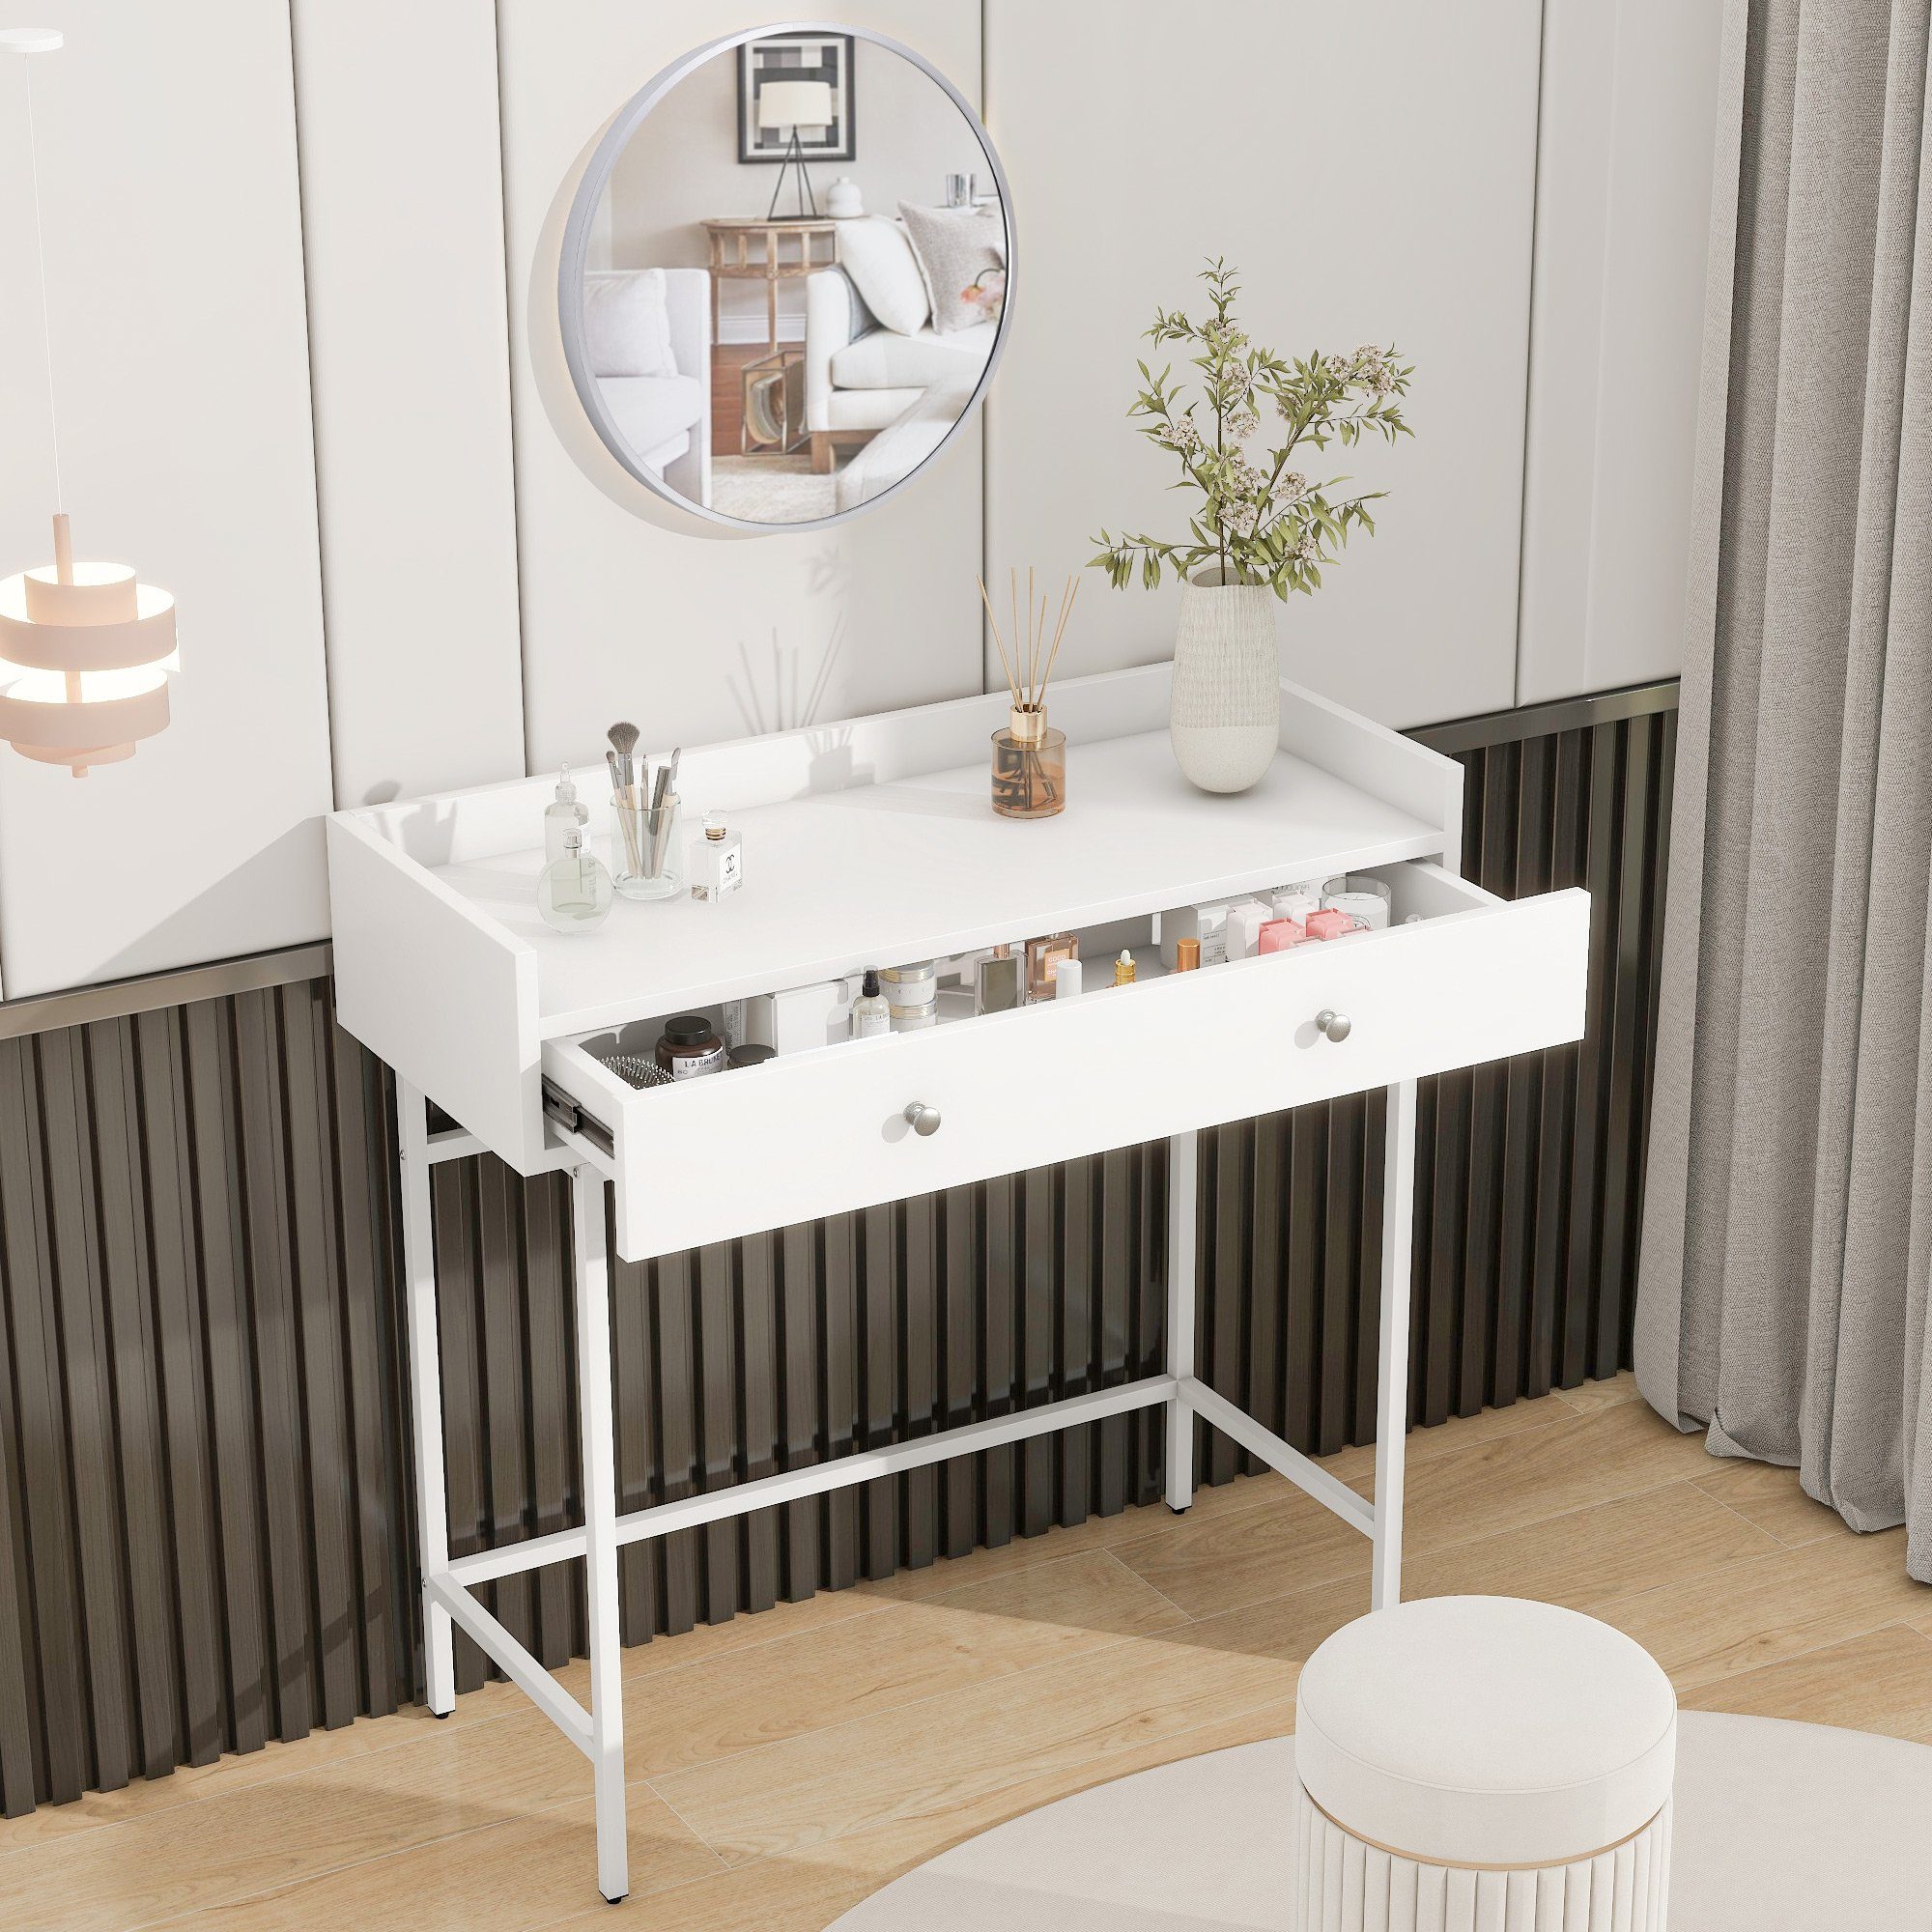 JOIVI Schminktisch Frisiertisch, Frisierkommode; Weiß (in minimalistischer Stil), mit Spiegel und 1 Schublade